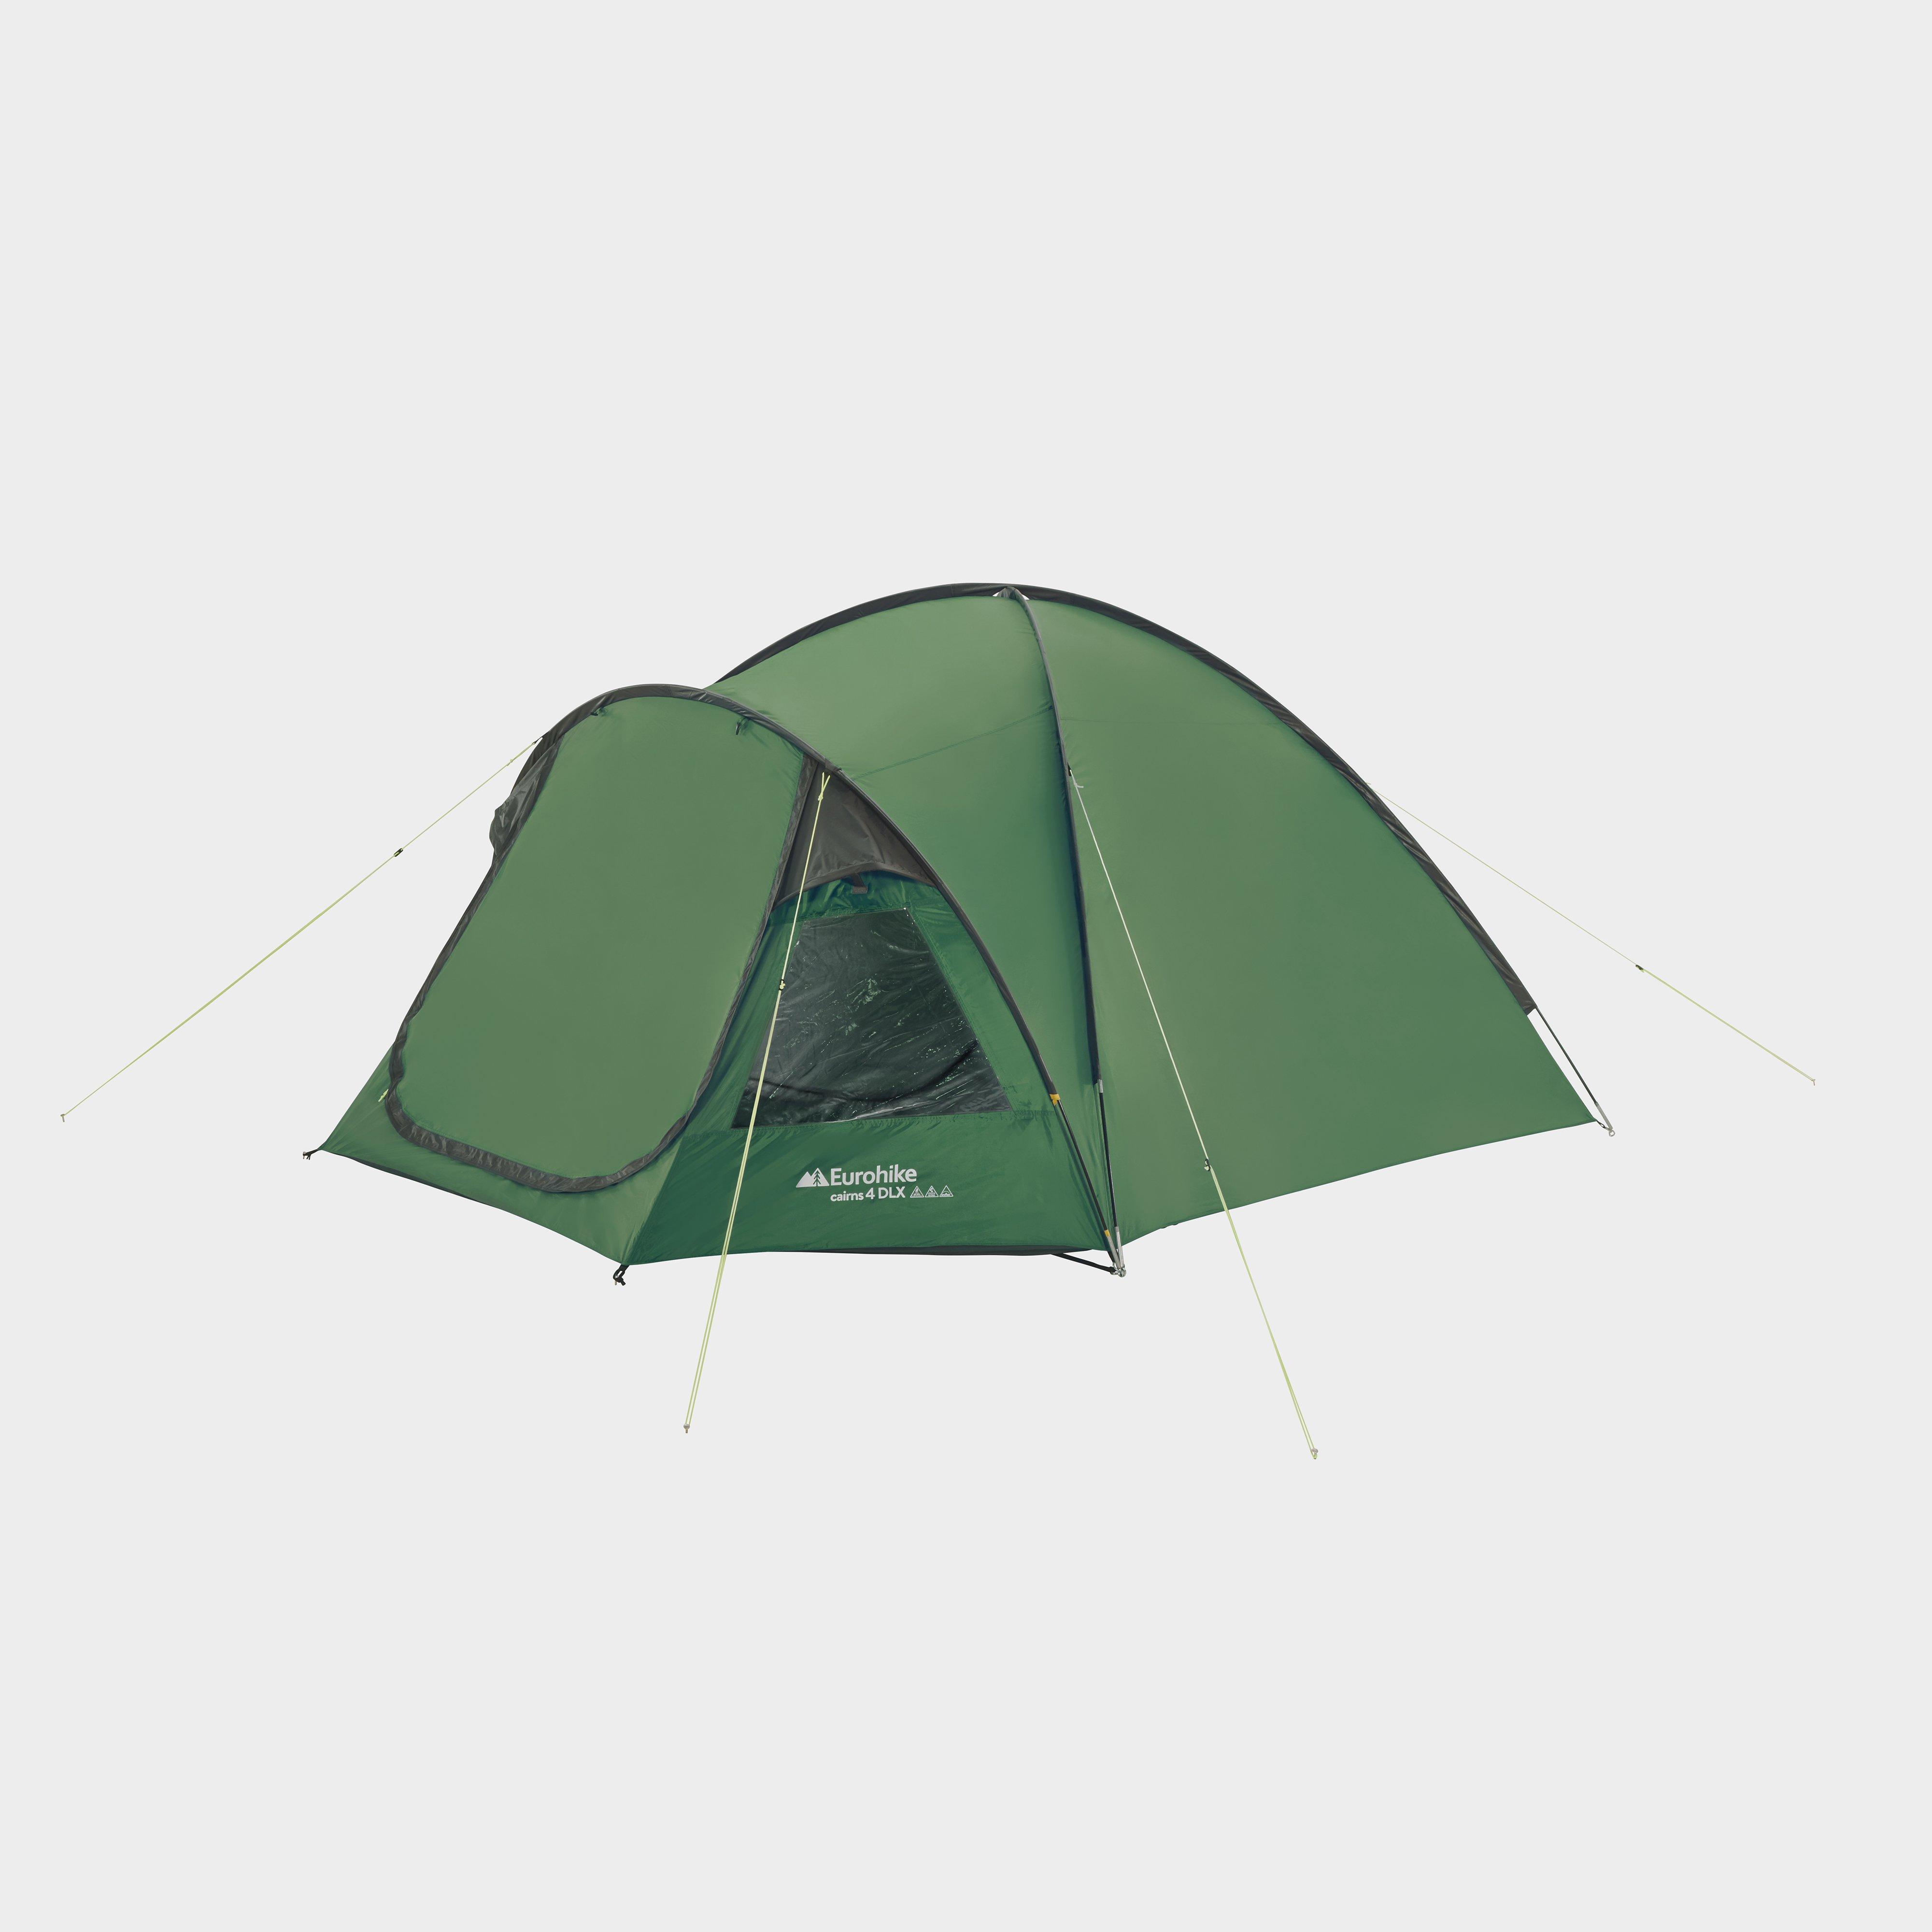 Eurohike Eurohike Cairns 4 Deluxe Nightfall™ Tent - Green, Green